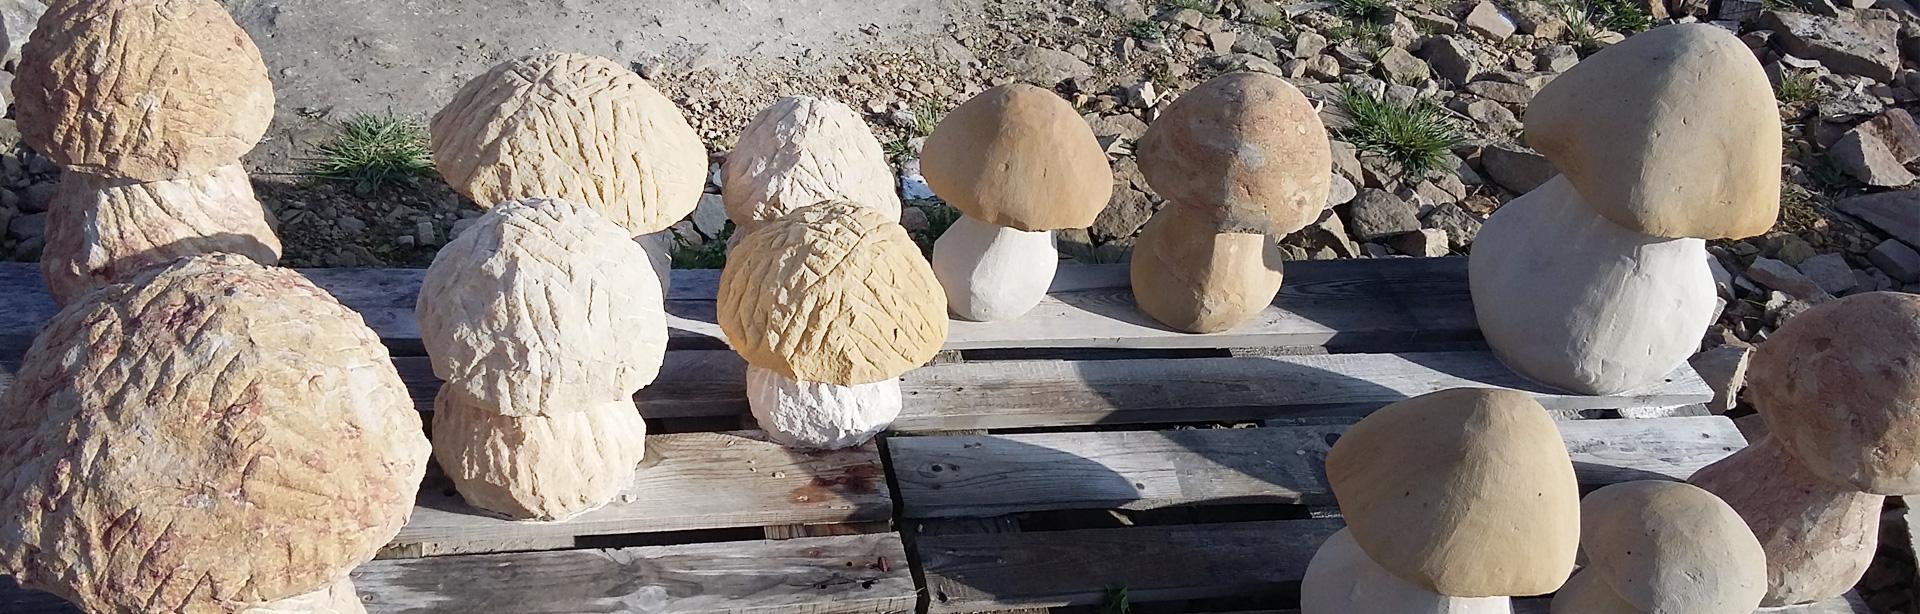 Kamienne grzyby dekoracyjne - ZK Kamieniarstwo producent wyrobów kamiennych - Slajd 2